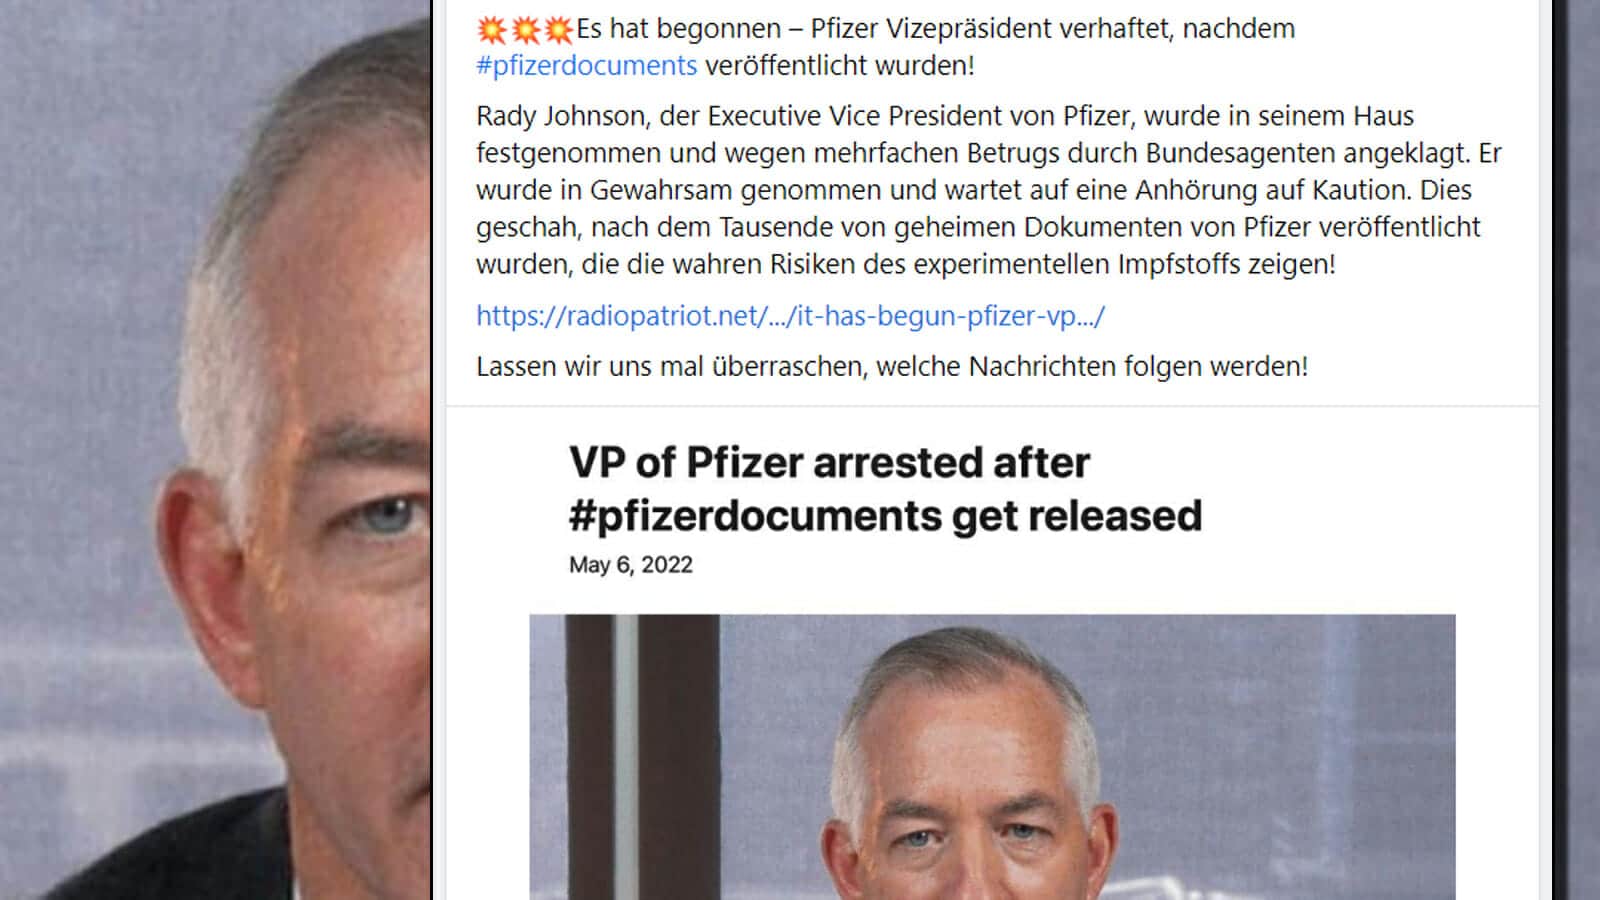 Pfizer Vizepräsident wurde nicht verhaftet!